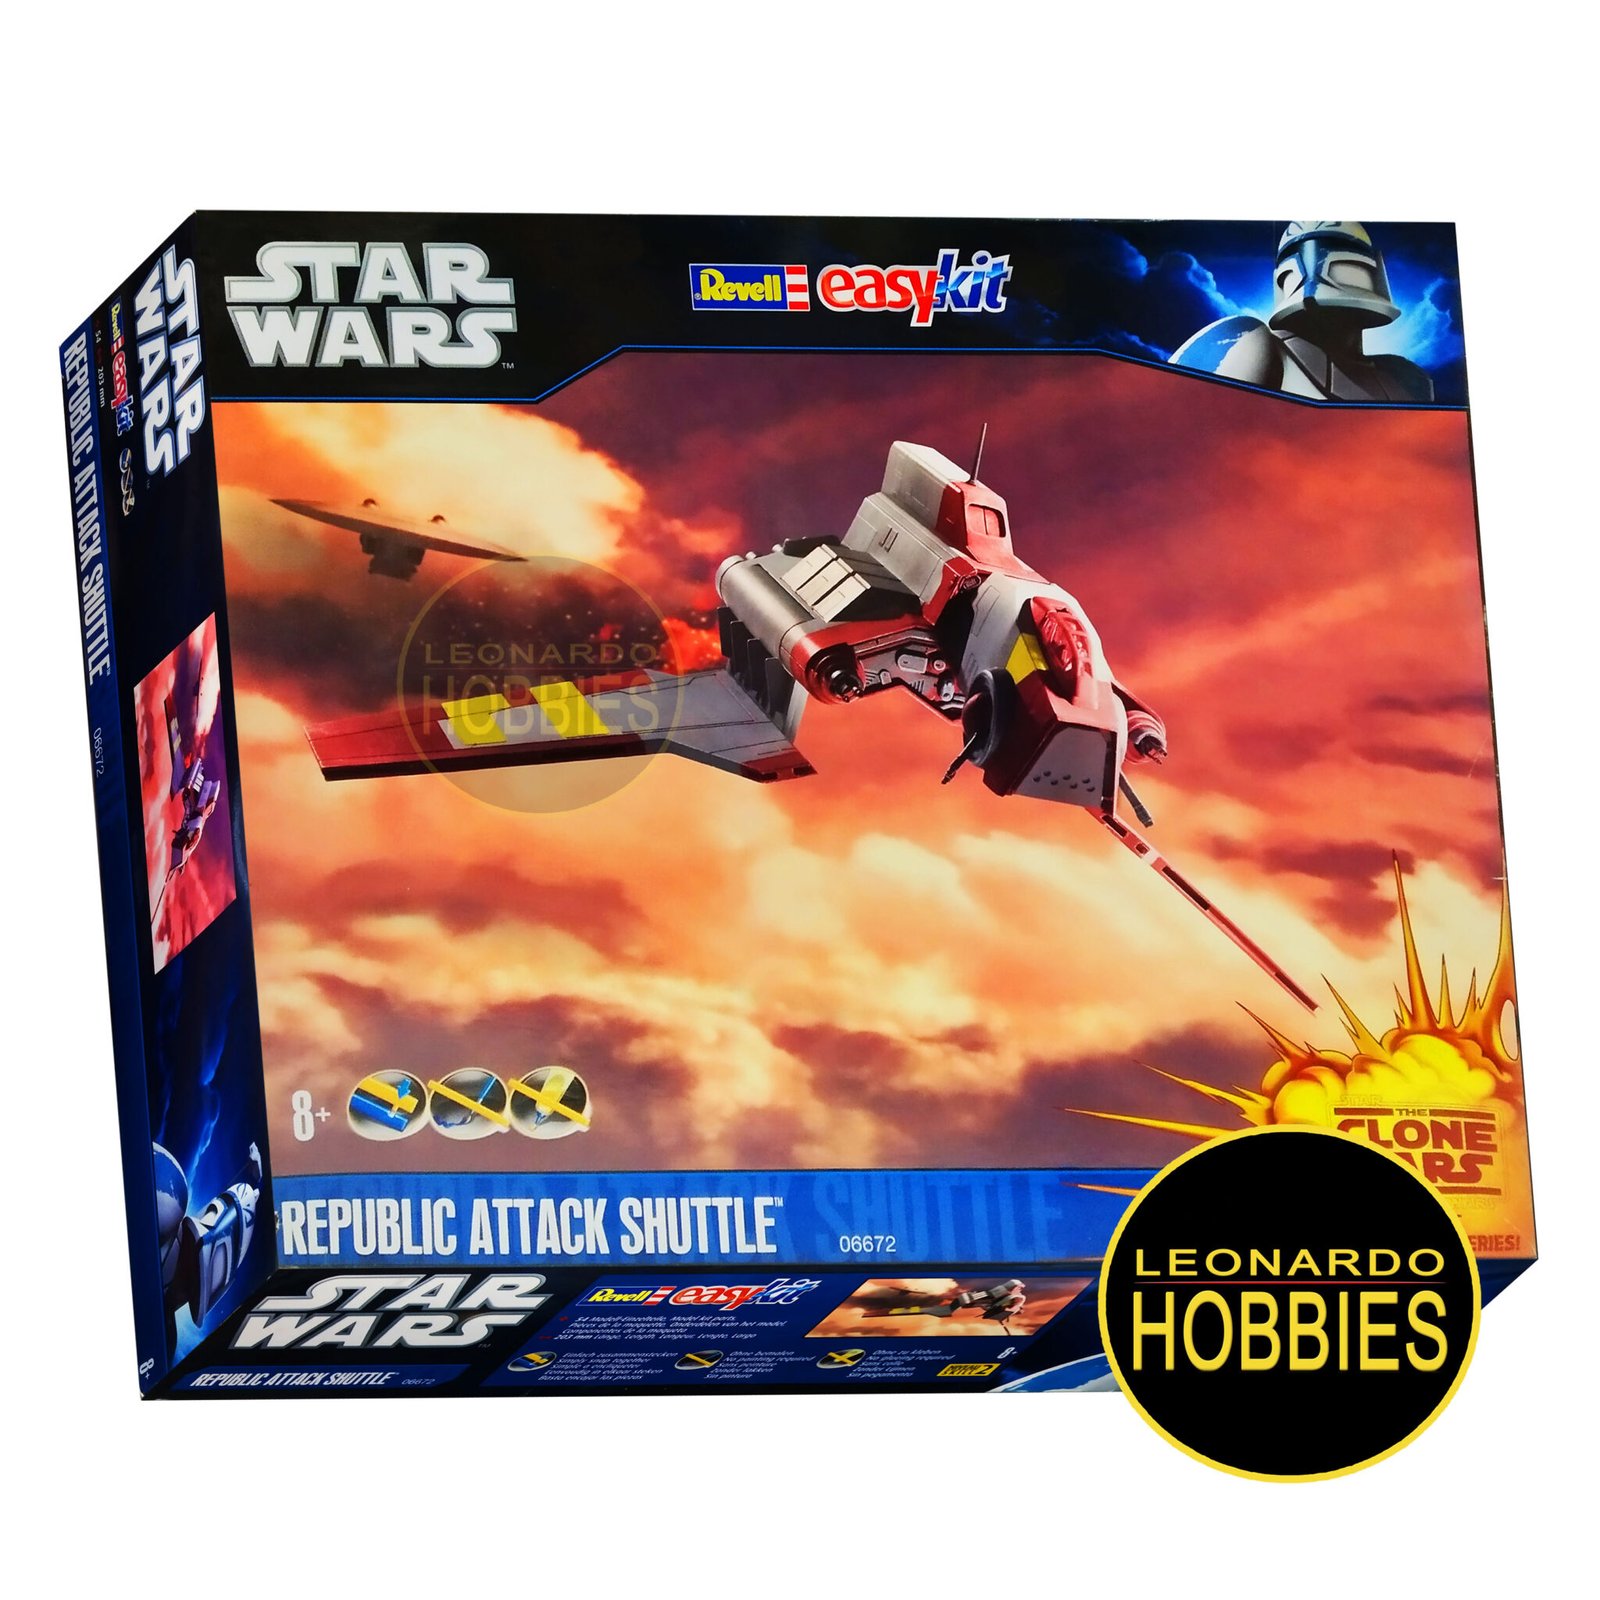 Republic Attack Shuttle Star Wars Easy Kit Revell 6672 – Leonardo